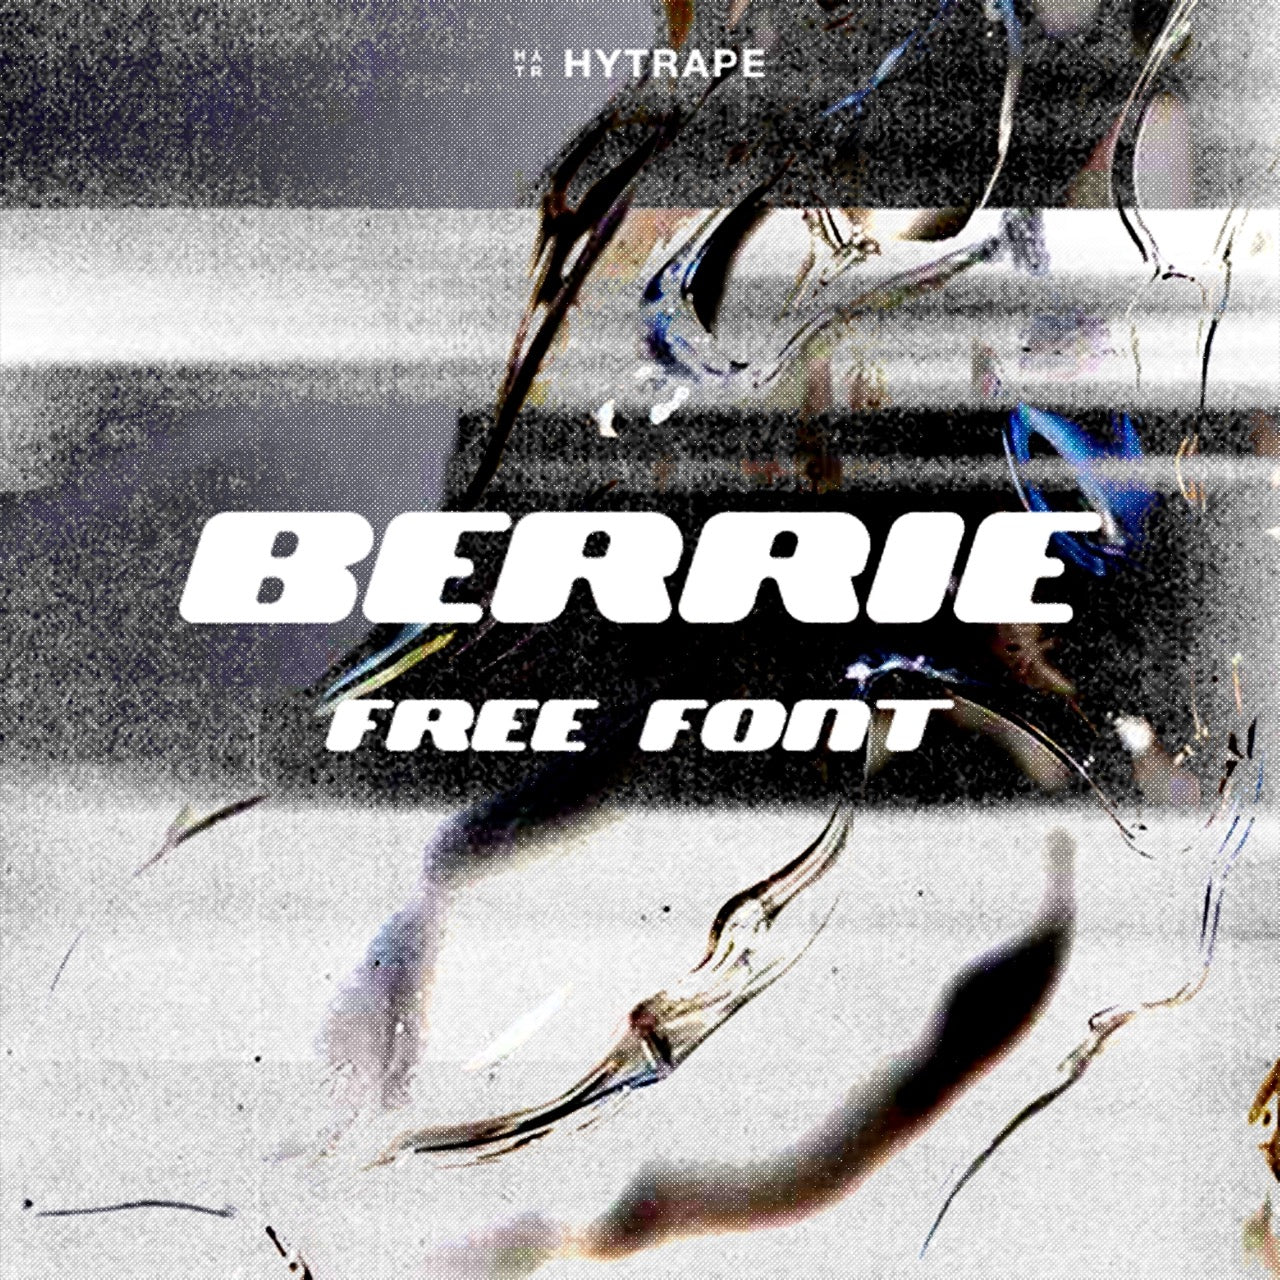 BERRIE FONT (FREE) HYTRAPE